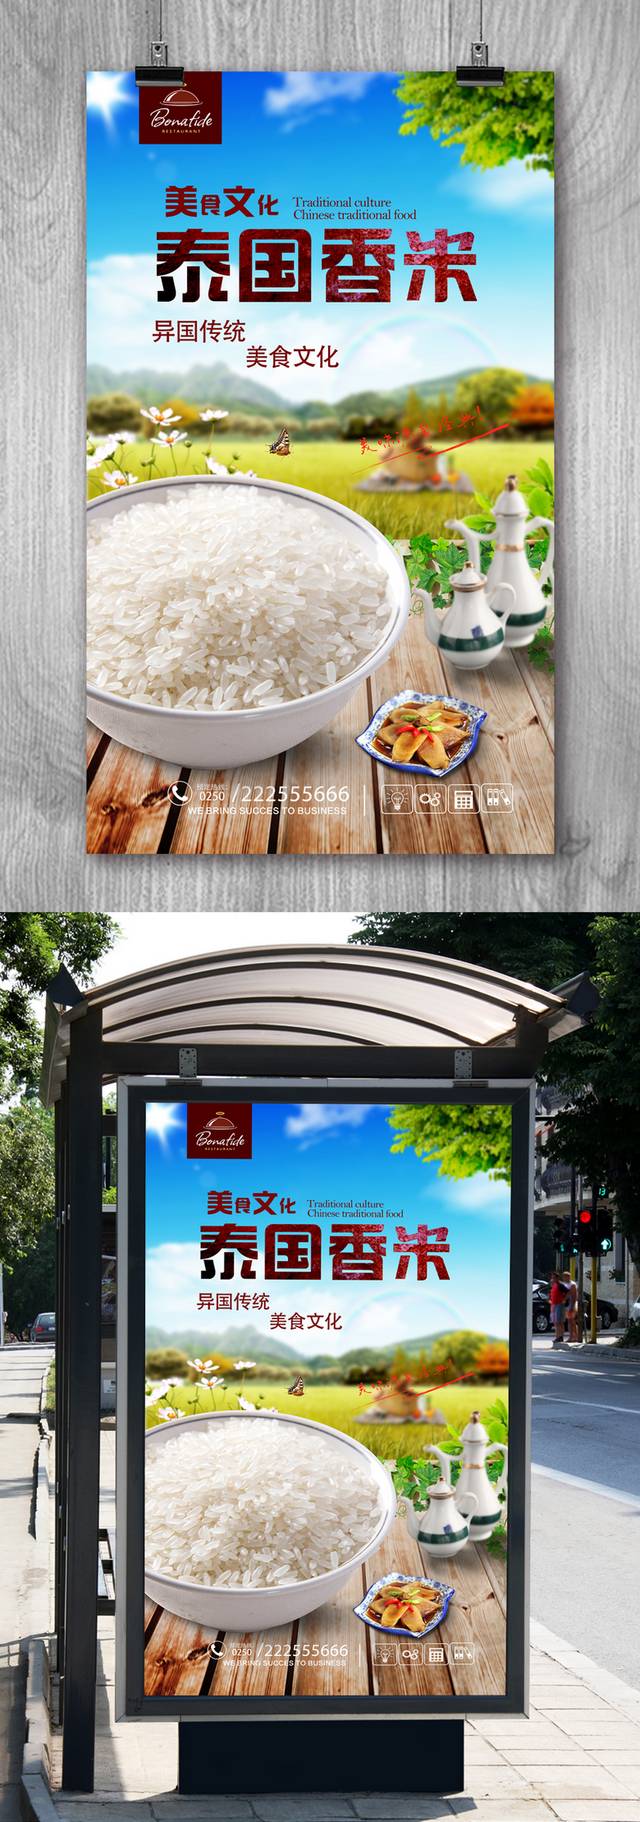 米店泰国香米海报